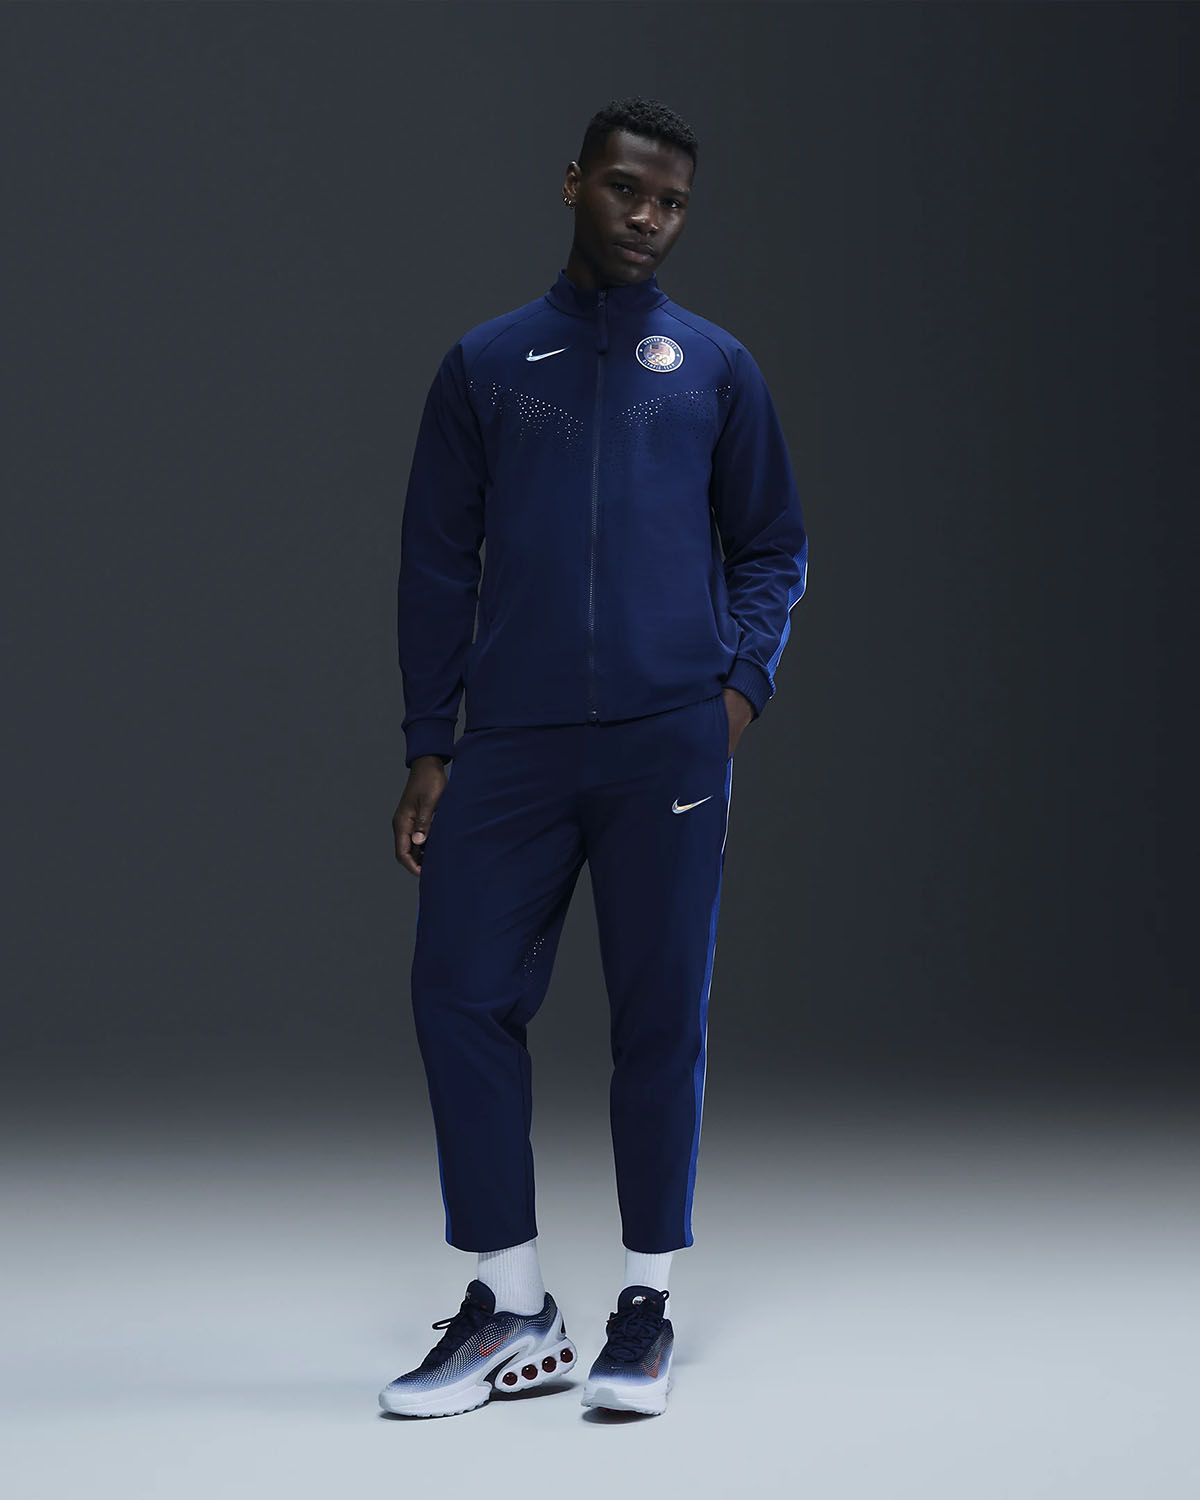 Nike Team USA Olympic Podium Jacket Pants 1